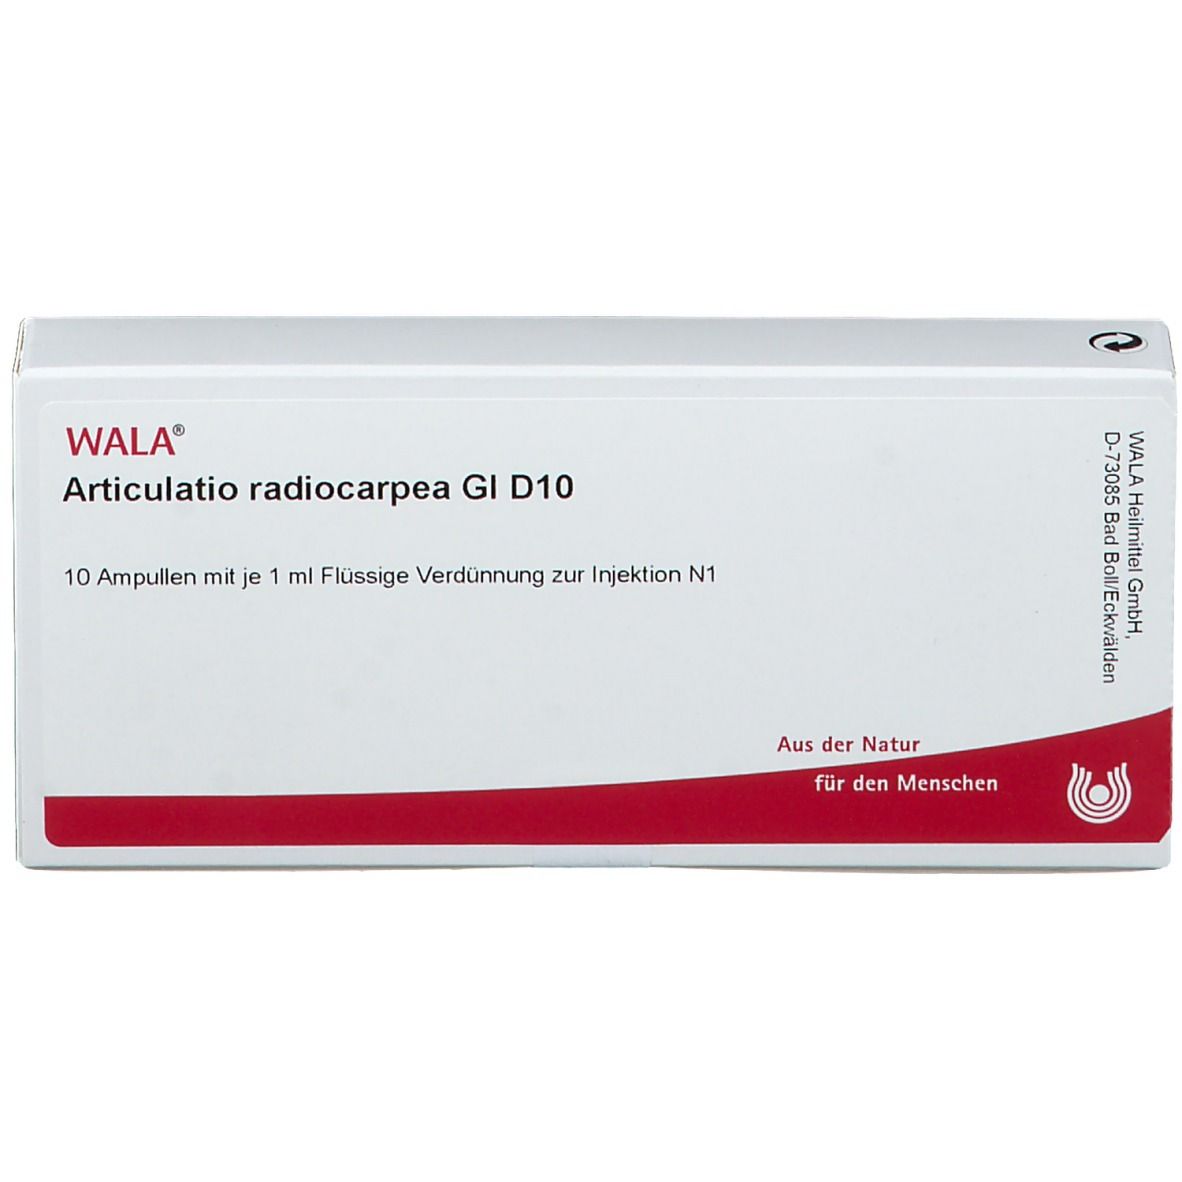 WALA® Articulatio radiocarpea Gl D 10